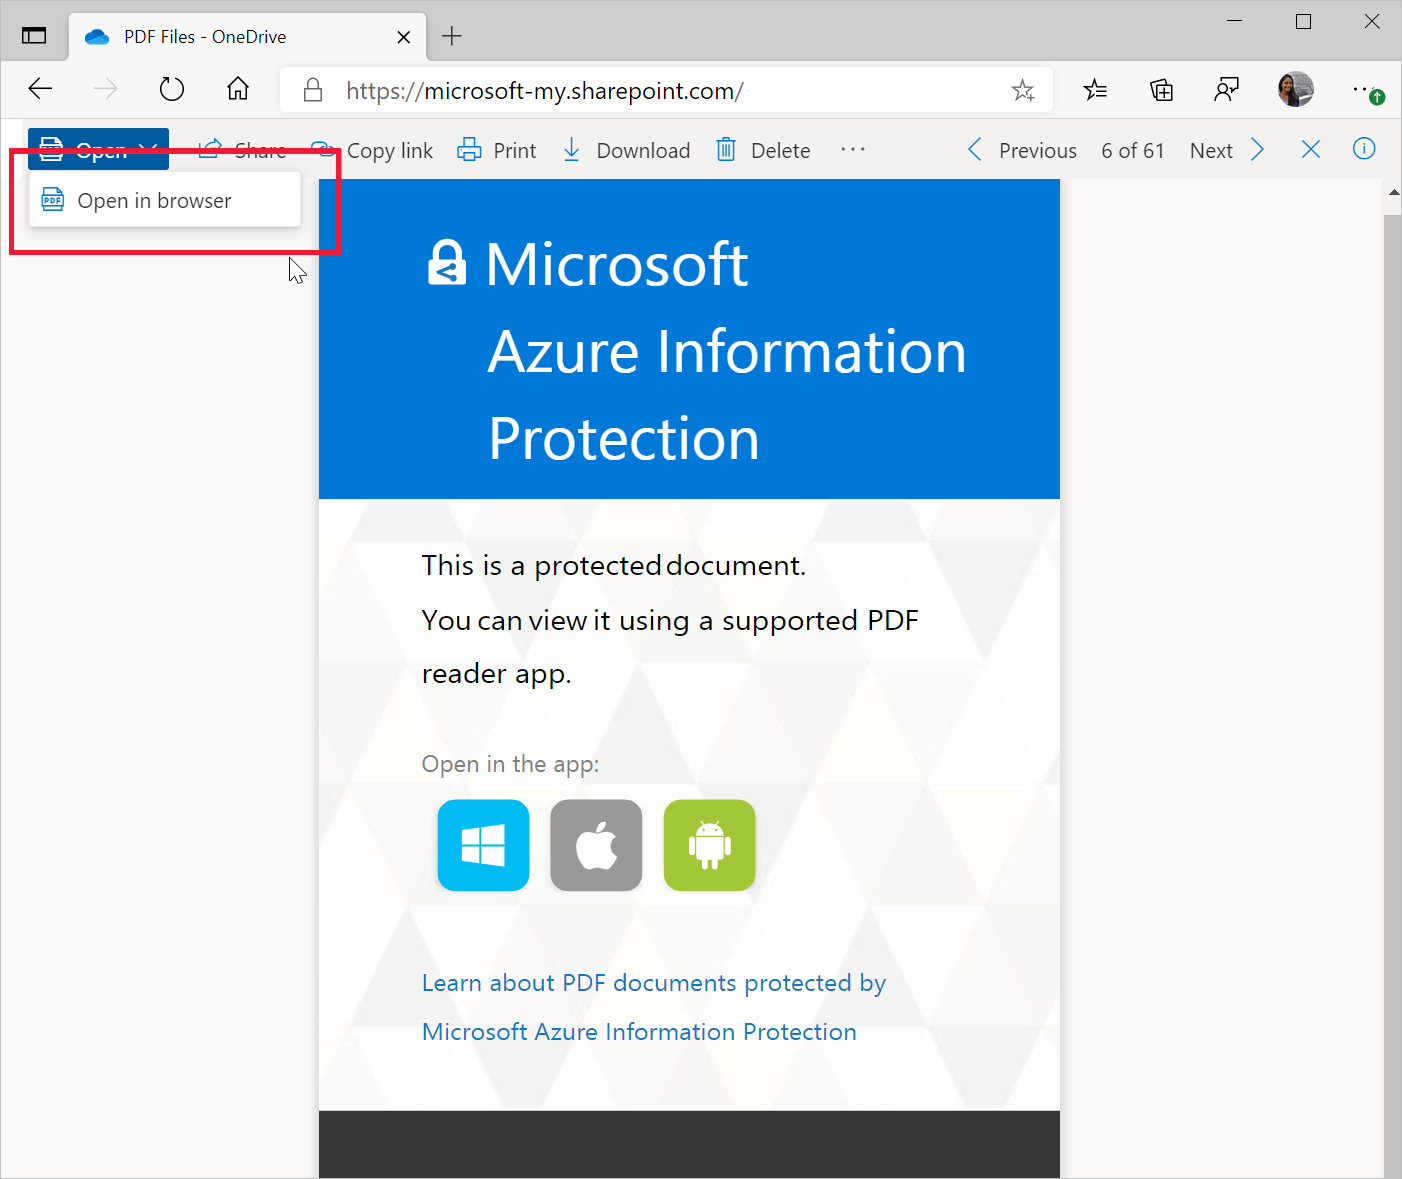 Invite à enregistrer la page PDF SharePoint protégé par MIP